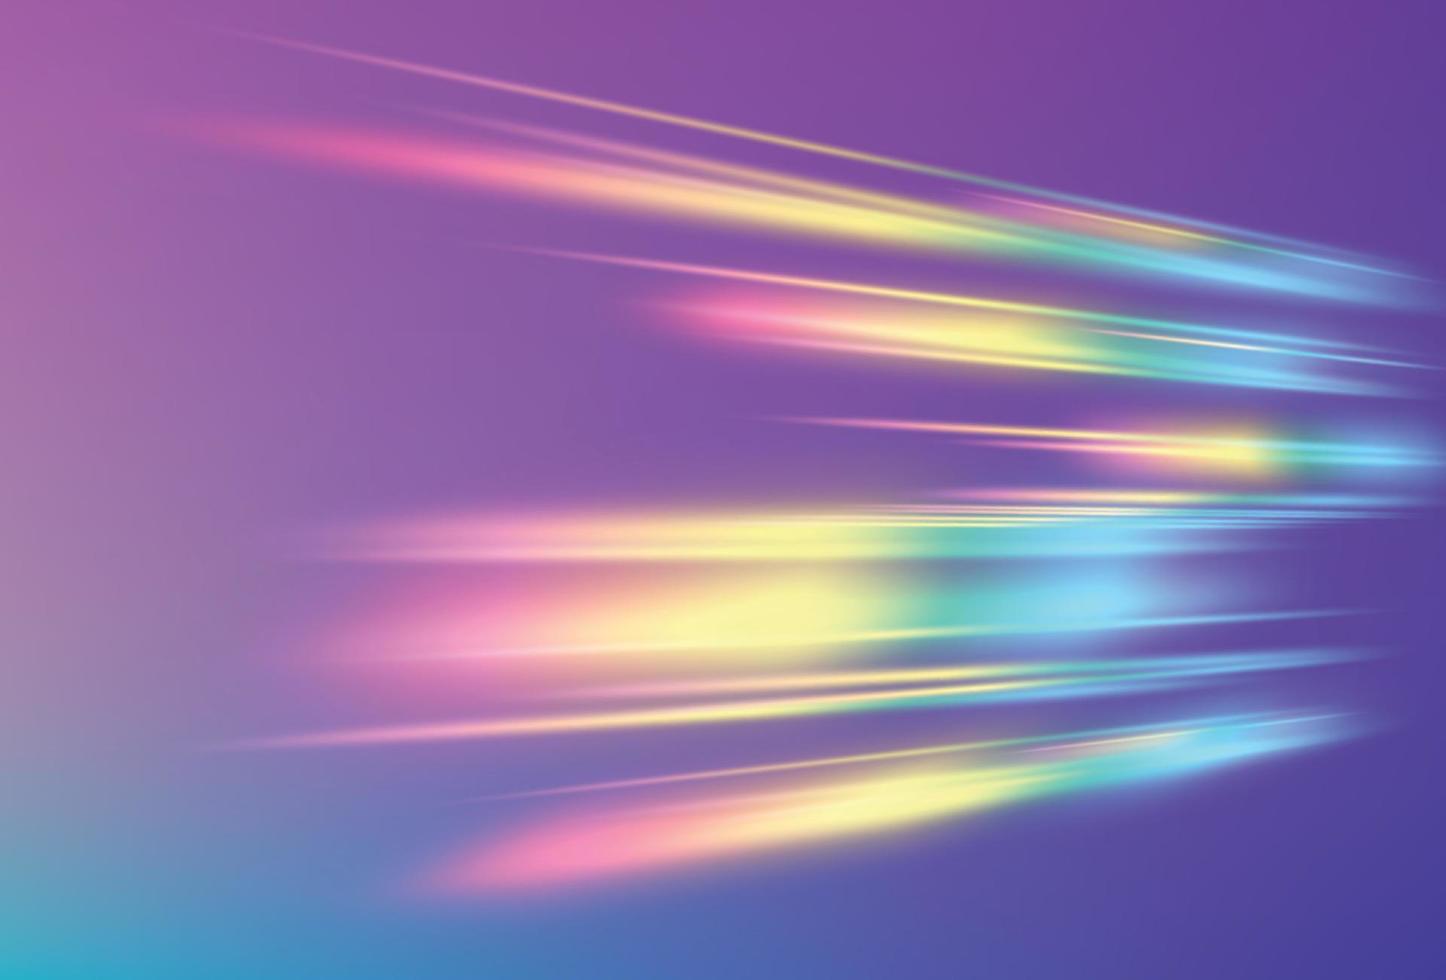 prisma, struttura del prisma. luci arcobaleno di cristallo. vettore